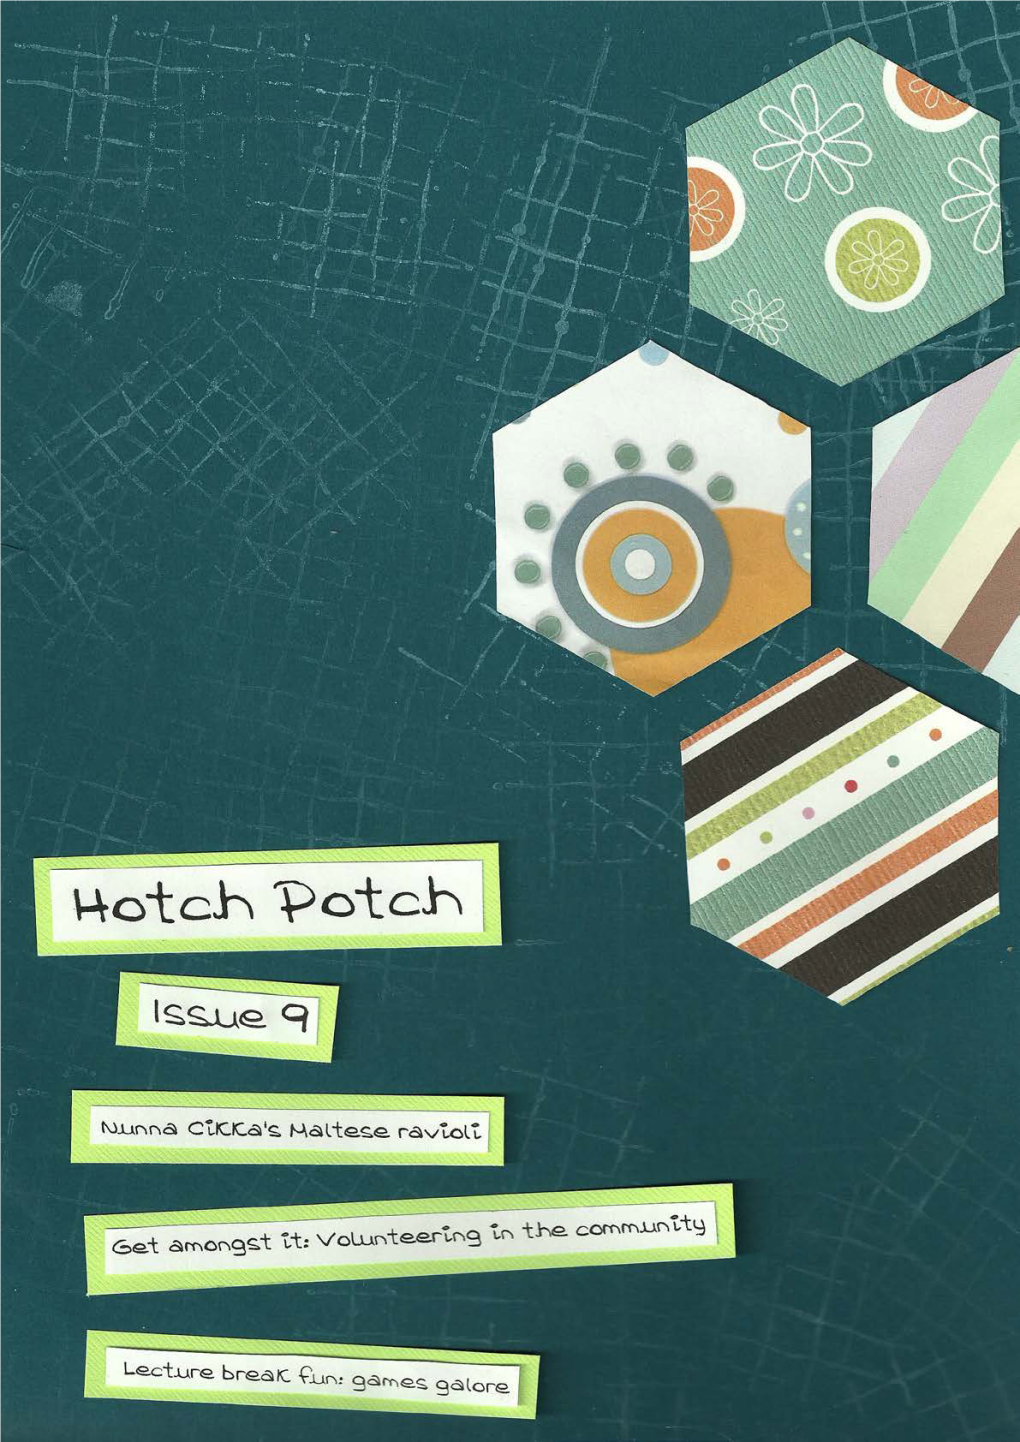 Hotch-Potch-Issue-9-Print-3.Pdf